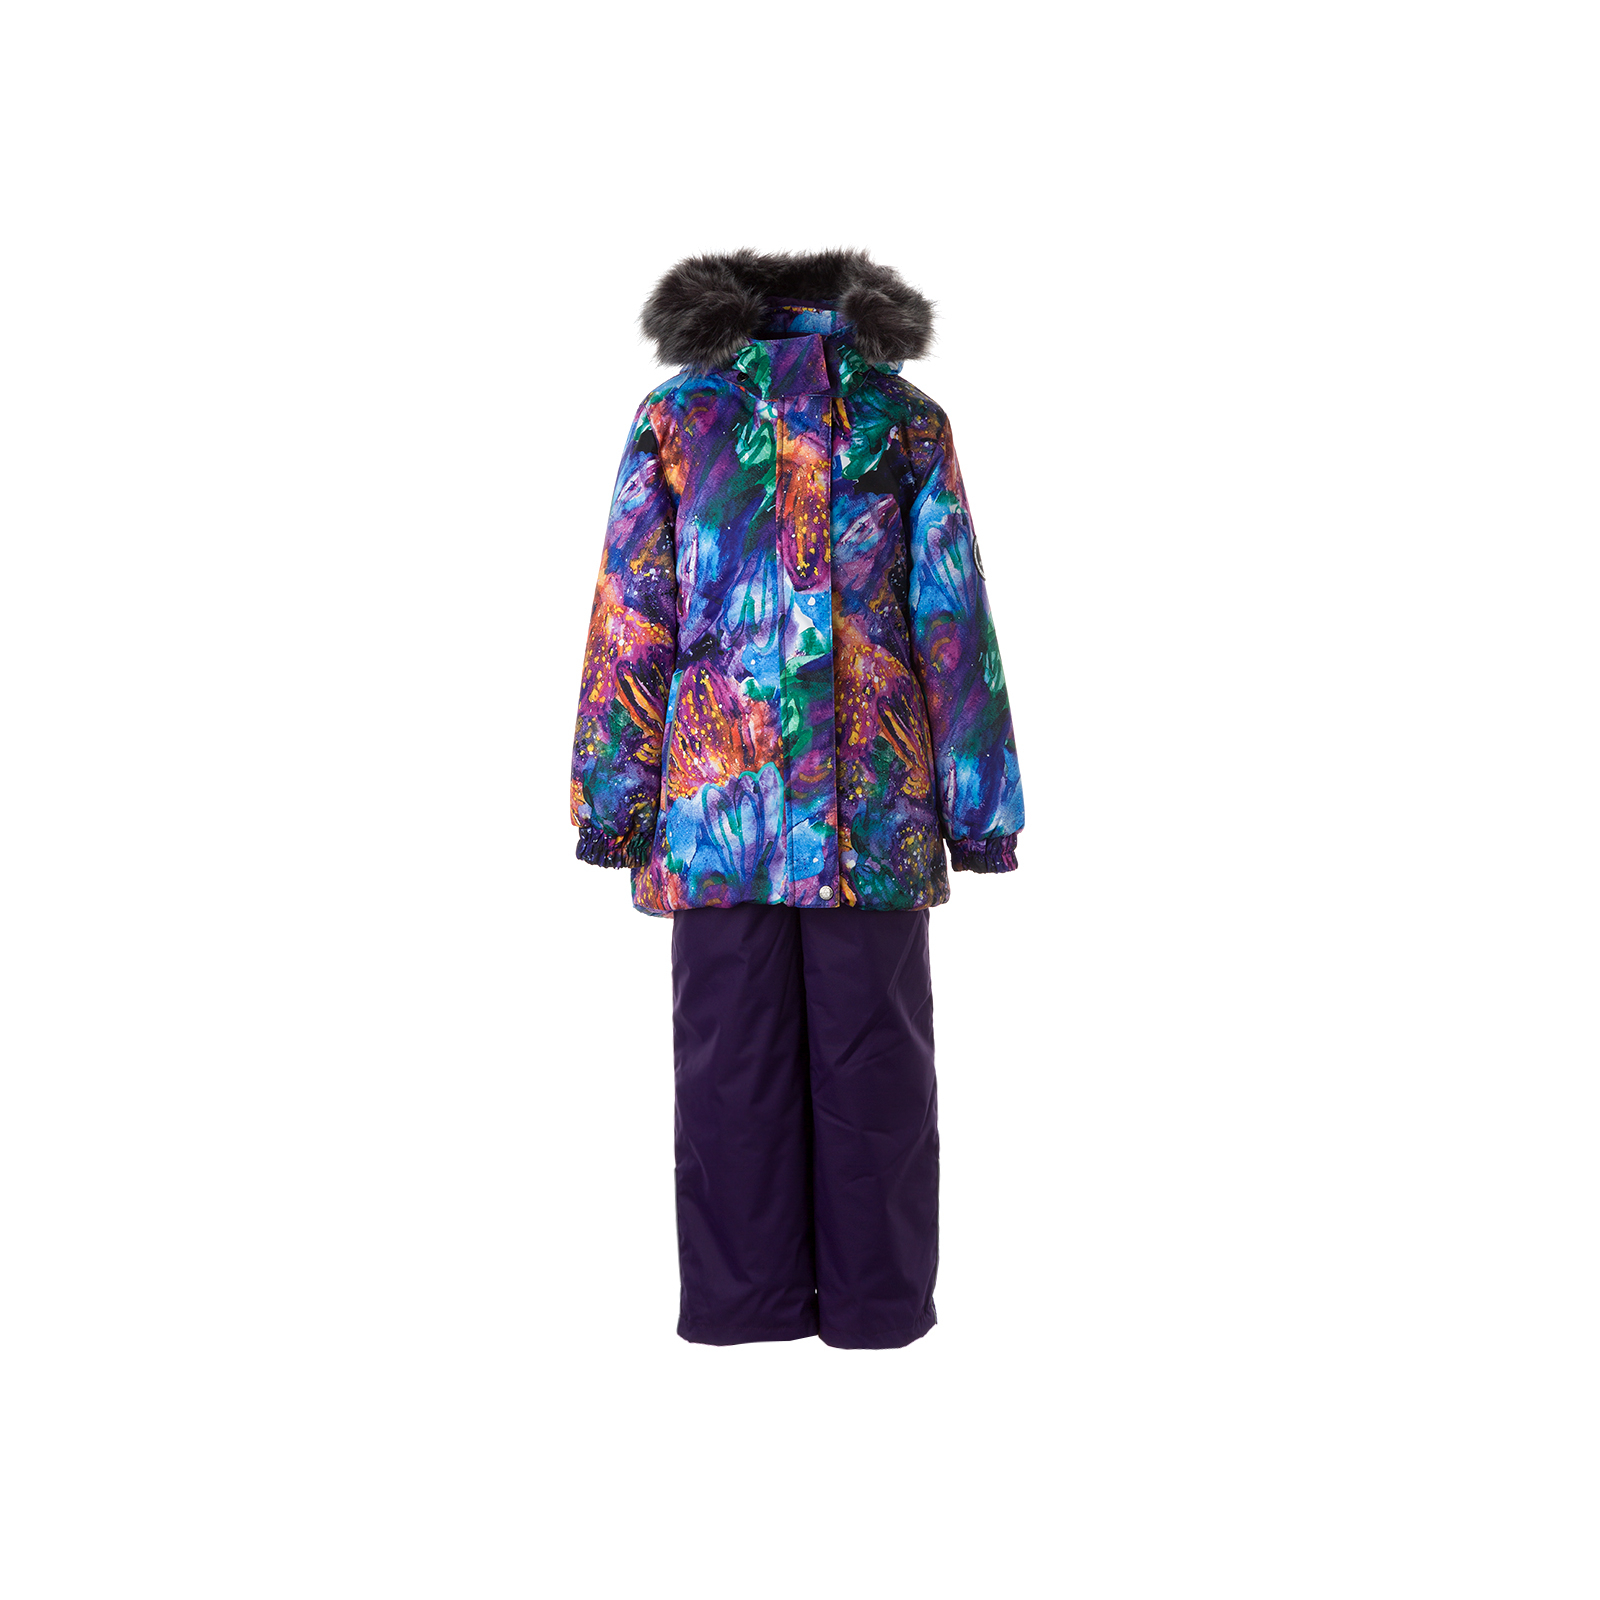 Комплект верхней одежды Huppa RENELY 2 41850230 пурпур с принтом/тёмно-лилoвый 92 (4741468978994)